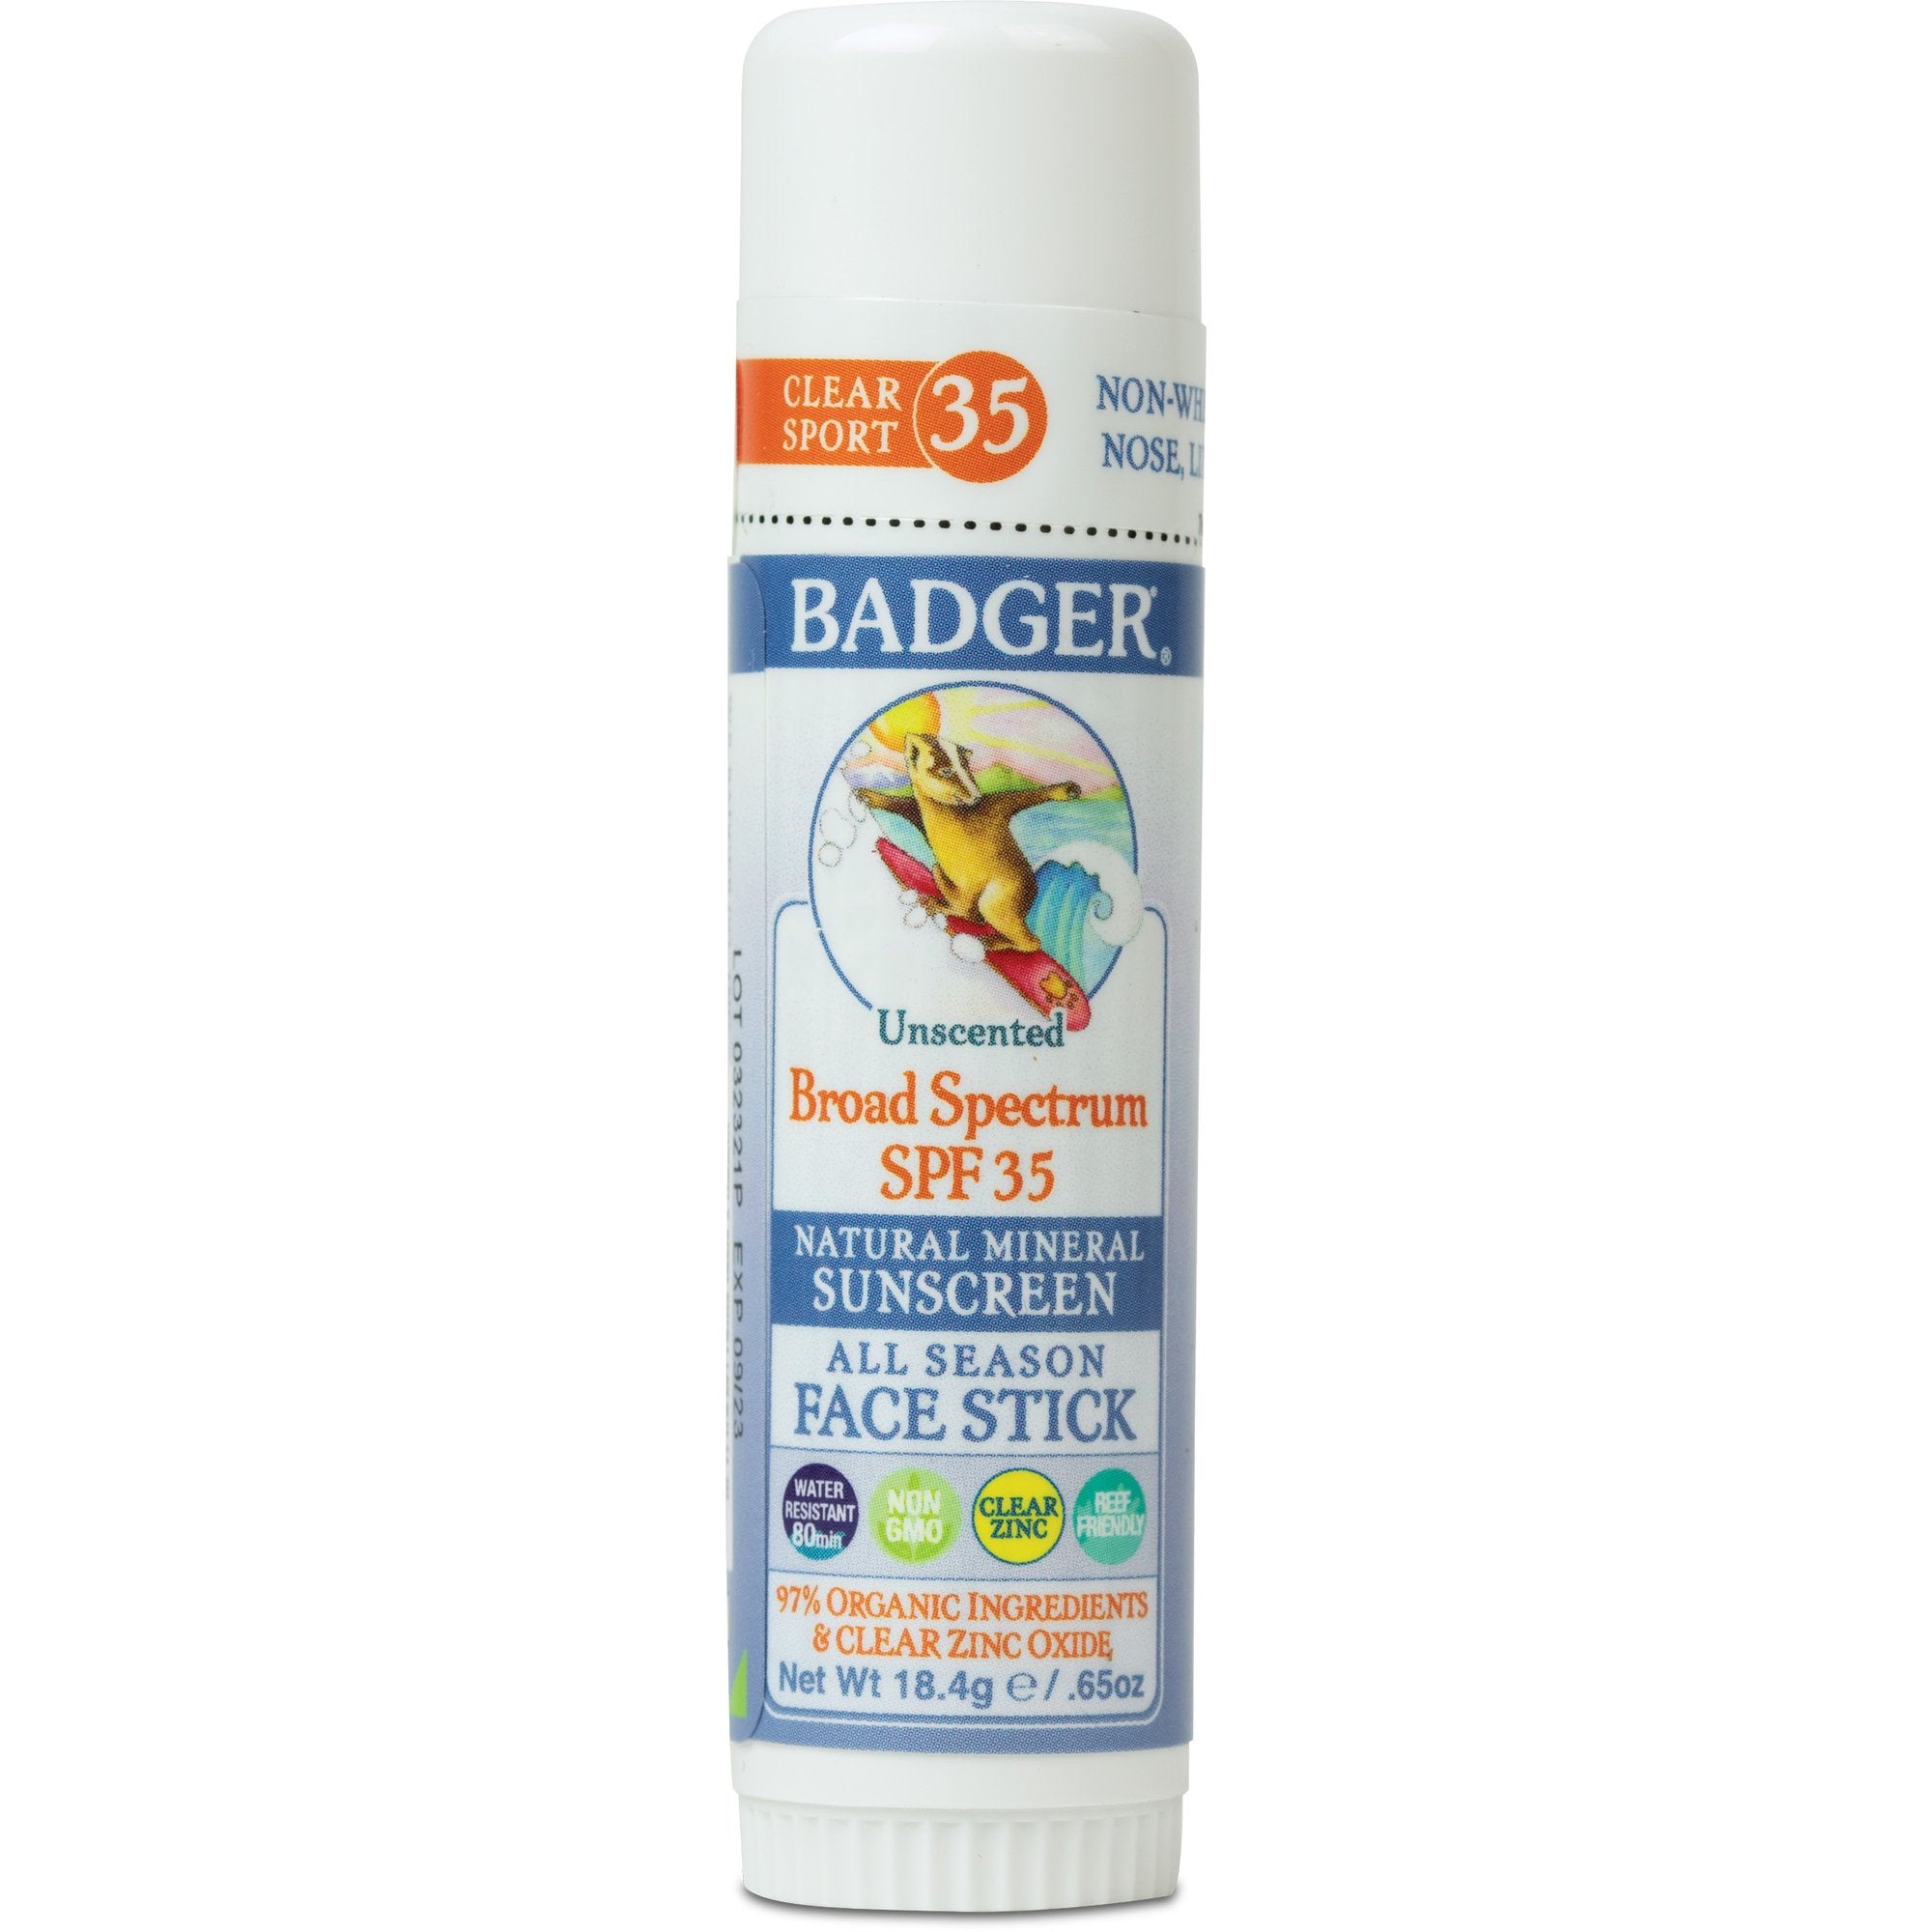 Badger Sunscreen Face Stick SPF 35 18.4g Tube